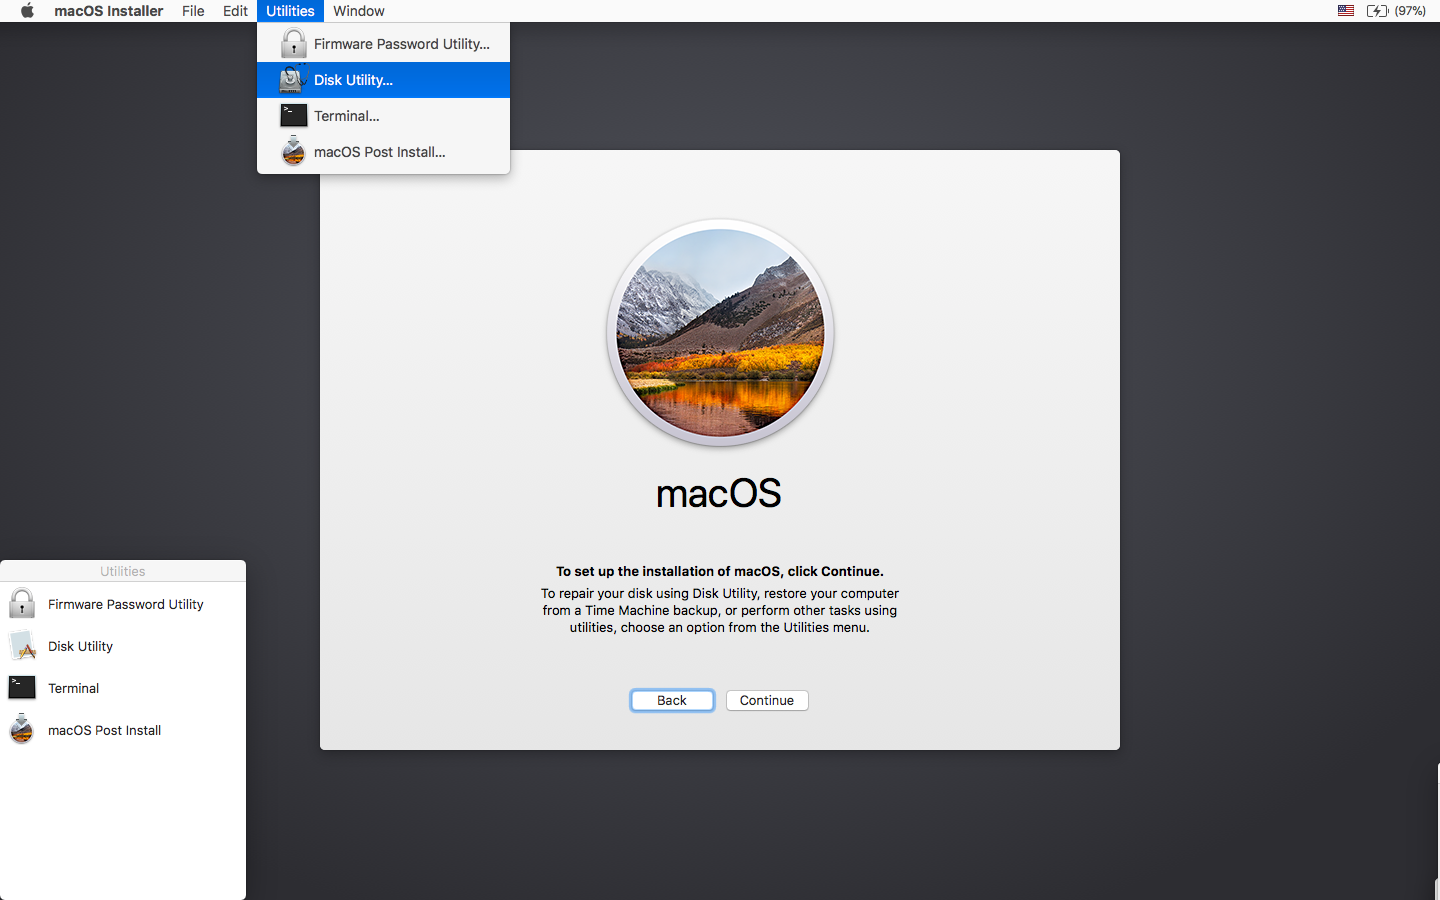 download hgih sierra installer for older mac